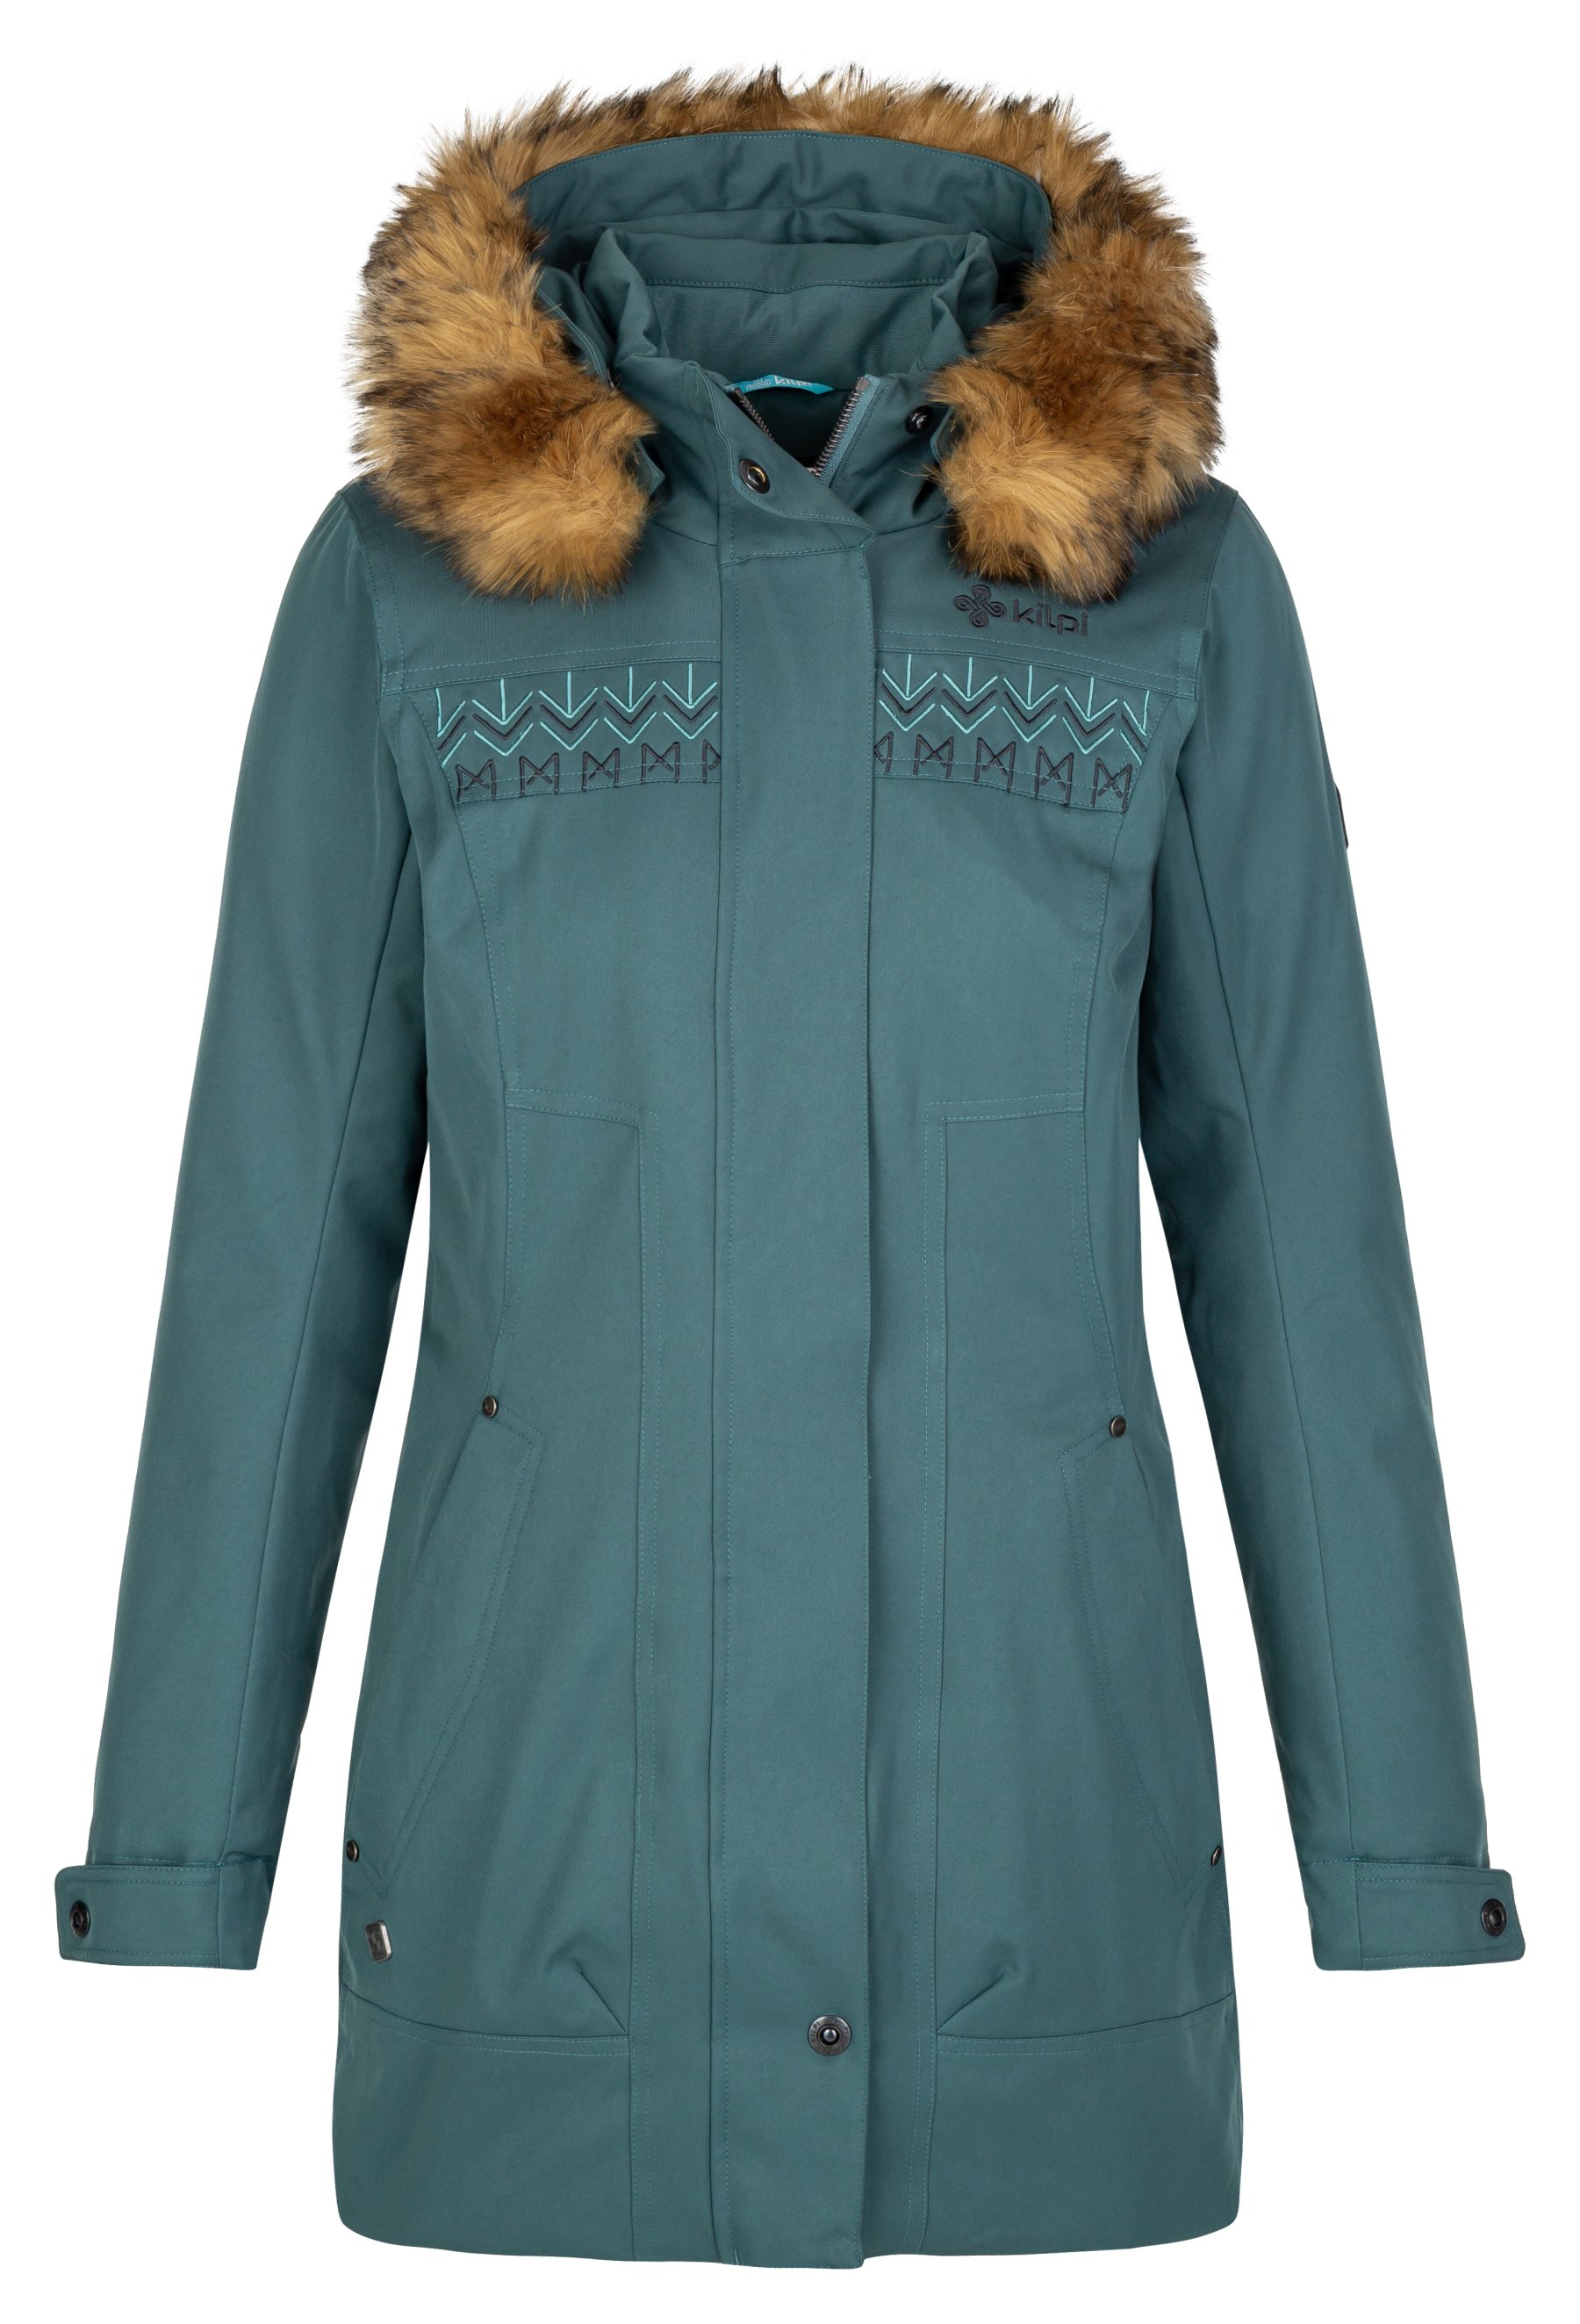 Kilpi dámský zimní kabát Peru-W Barva: tmavě zelená, Velikost: 36